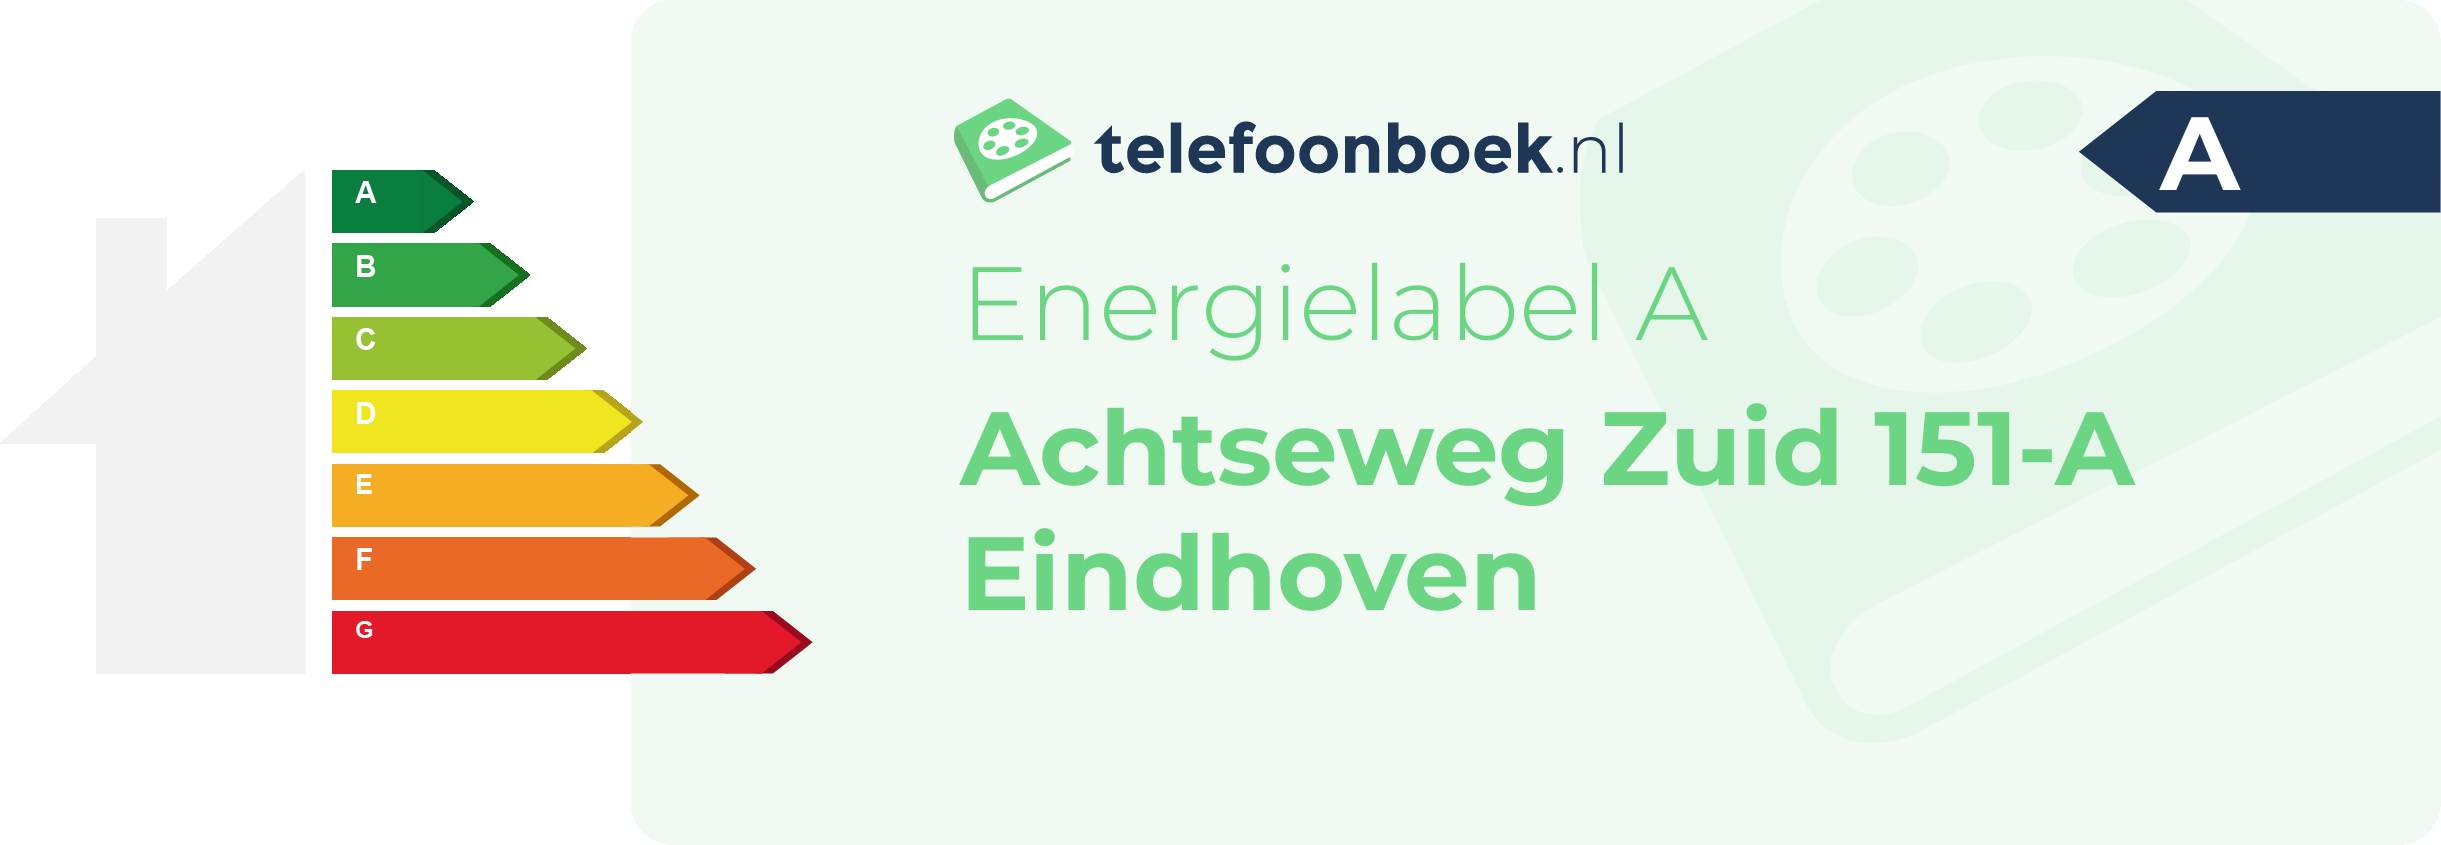 Energielabel Achtseweg Zuid 151-A Eindhoven